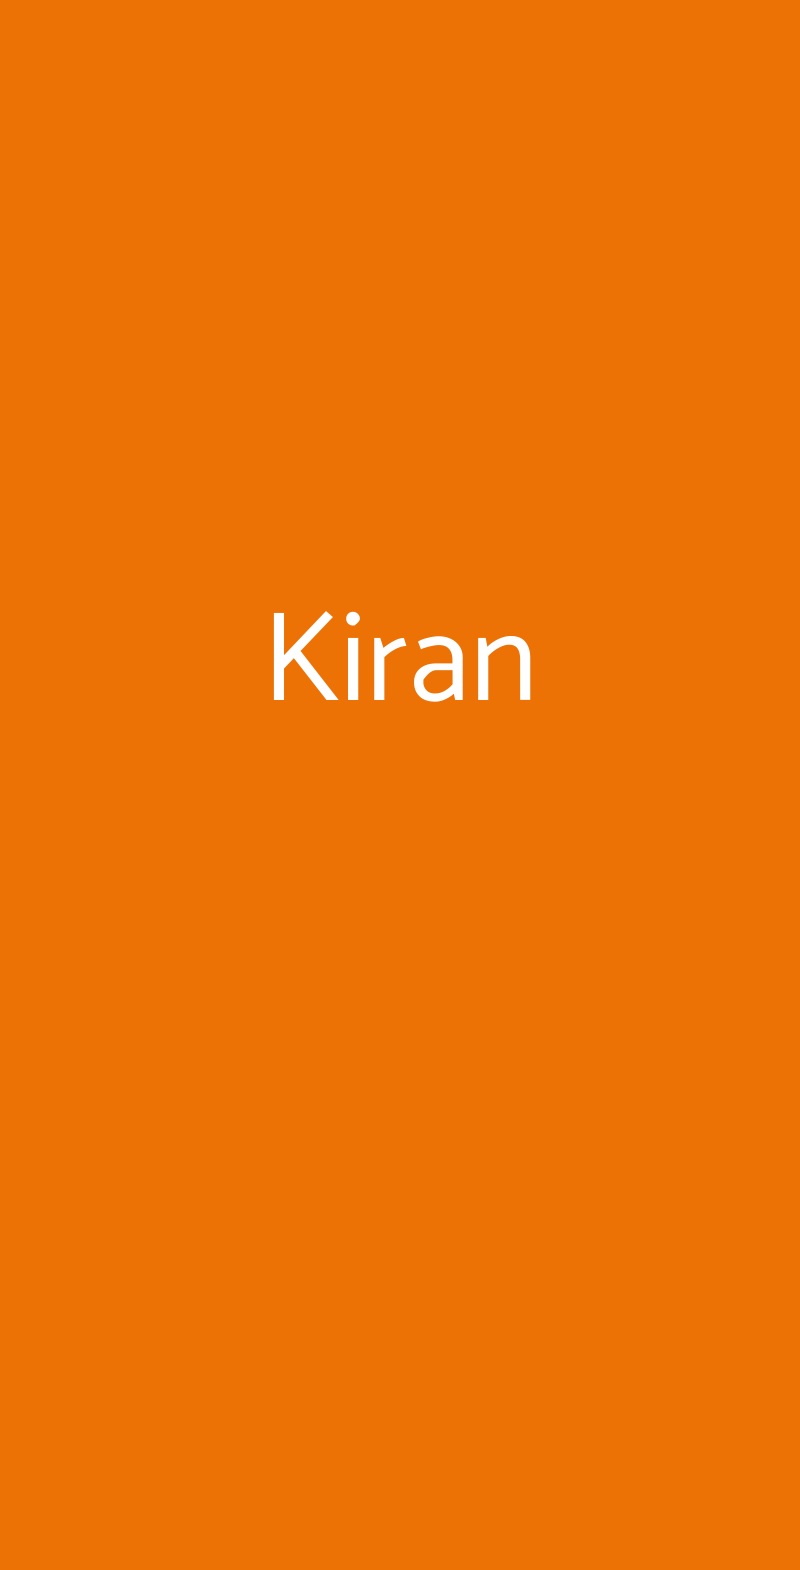 Kiran Milano menù 1 pagina